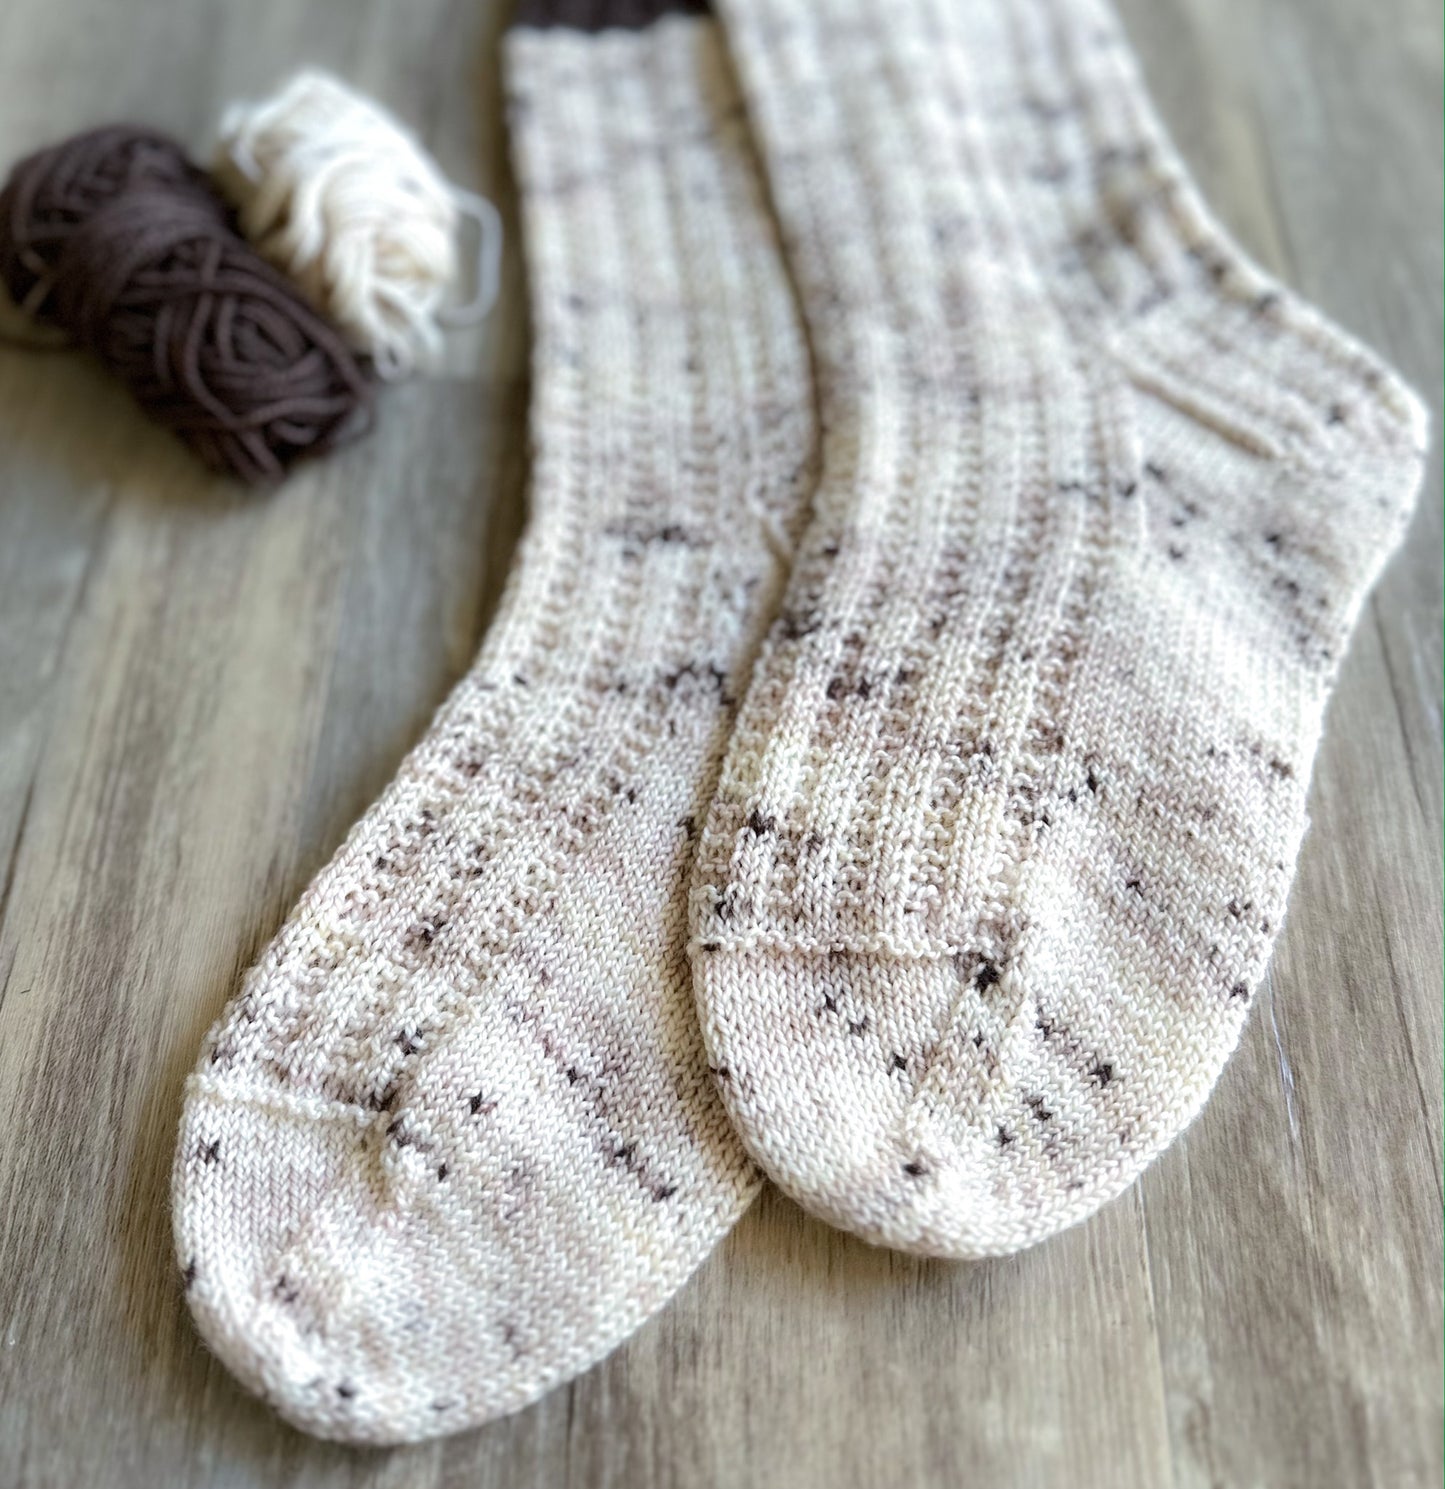 Moose Tracks Socks (Part of Vanilla Sundae Sock Set)